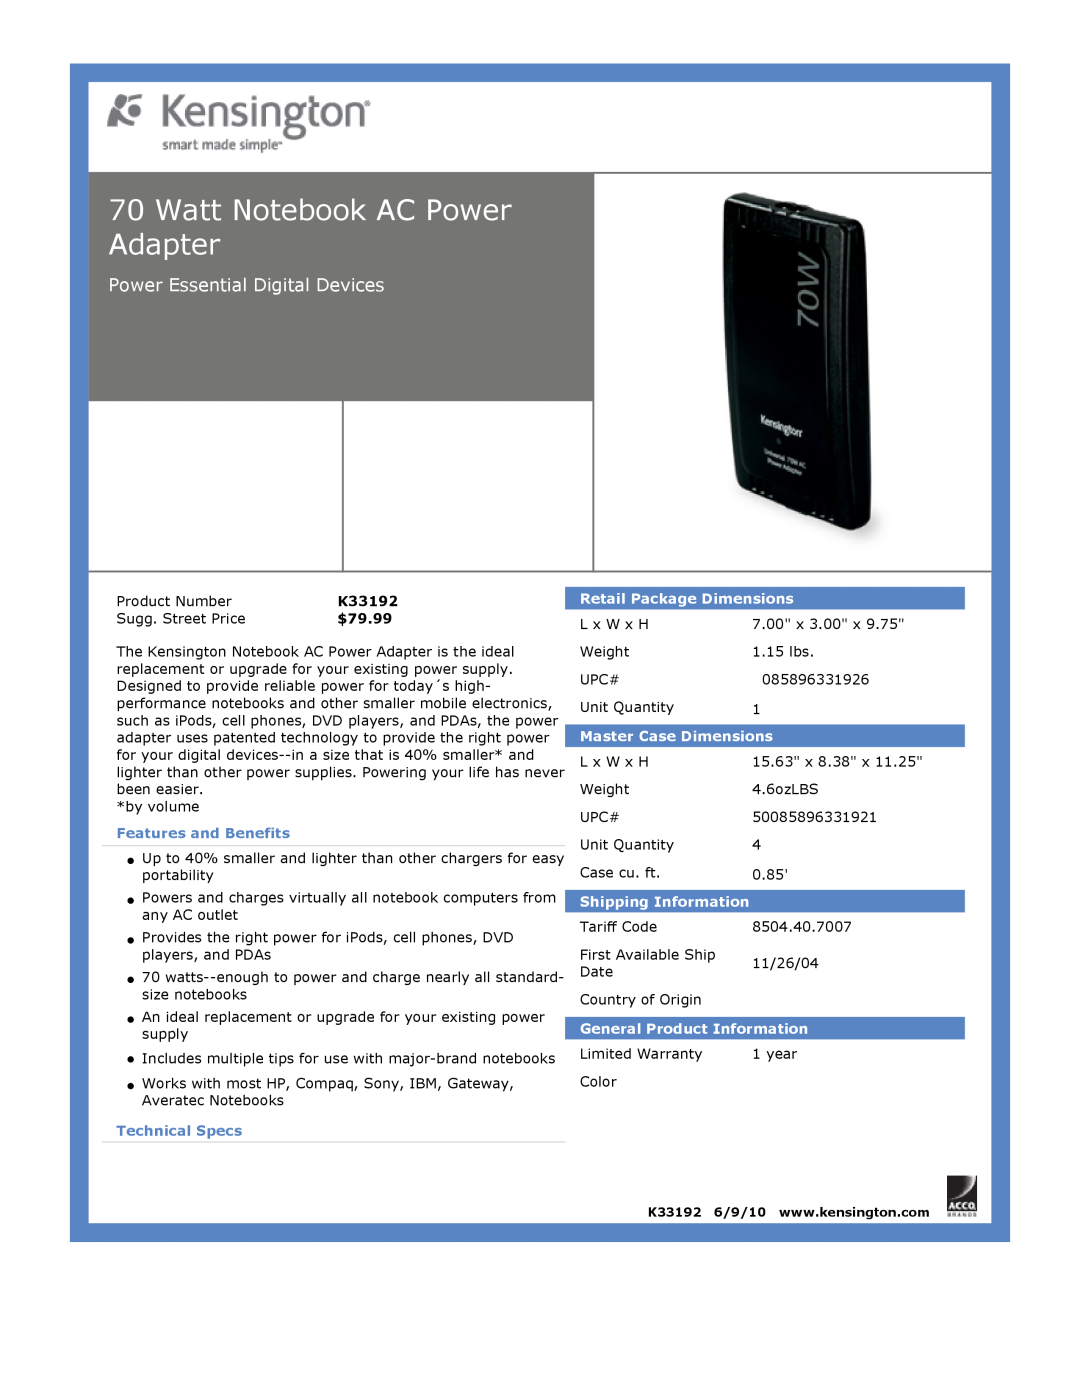 Kensington EU64325 Watt Notebook AC Power Adapter, Power Essential Digital Devices, $79.99, Features and Benefits 